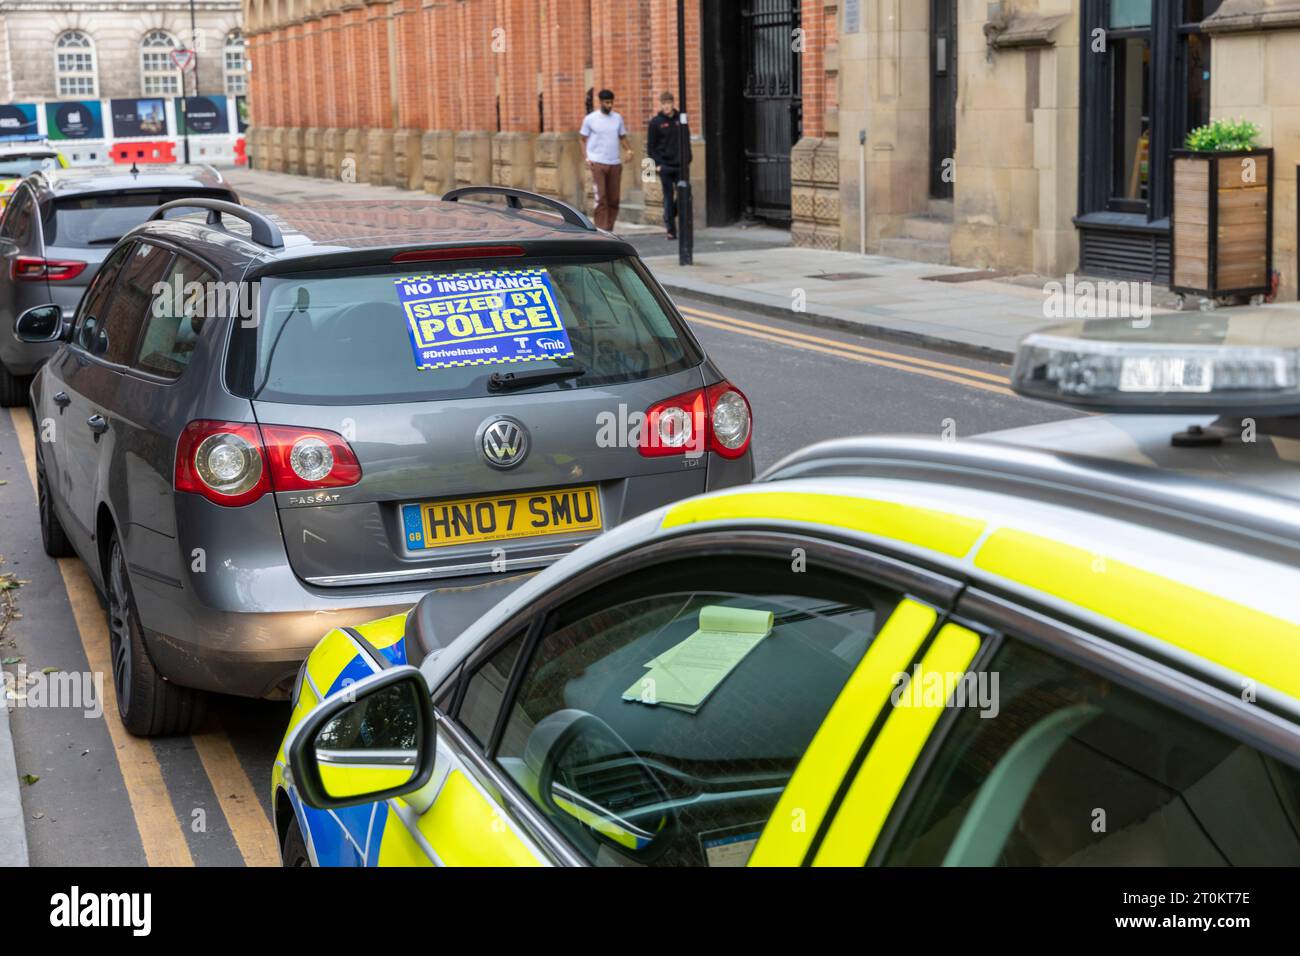 Police de Manchester, la police a saisi une voiture VW Passat pour ne pas avoir d'assurance, saisi pour aucun autocollant d'assurance placé sur la voiture, Manchester, Angleterre Banque D'Images